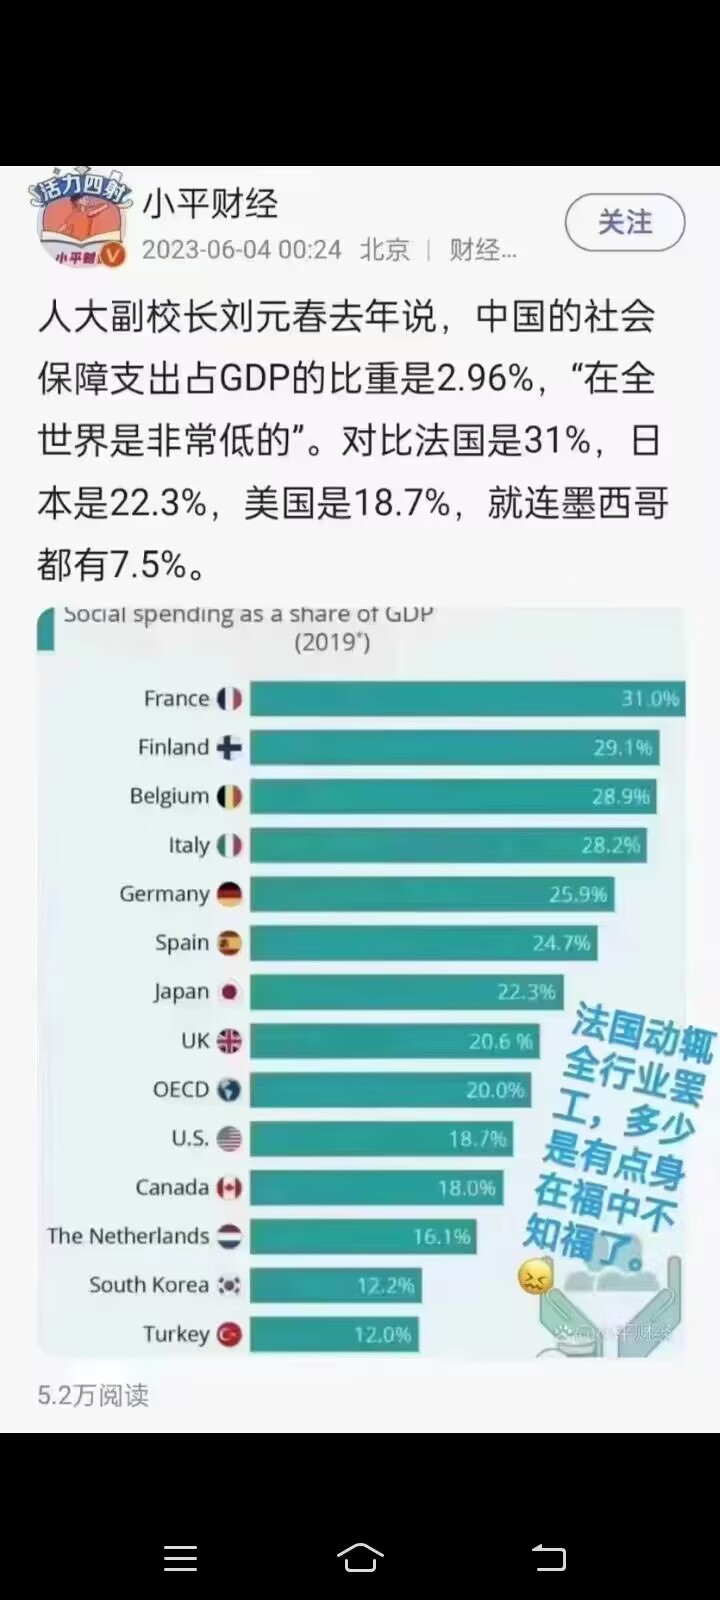 中国的社会保障支出占GDP的比重是2.96%，在全世界是非常低的。法国还动不动就全行业罢工，真是身在福中不知福！！！